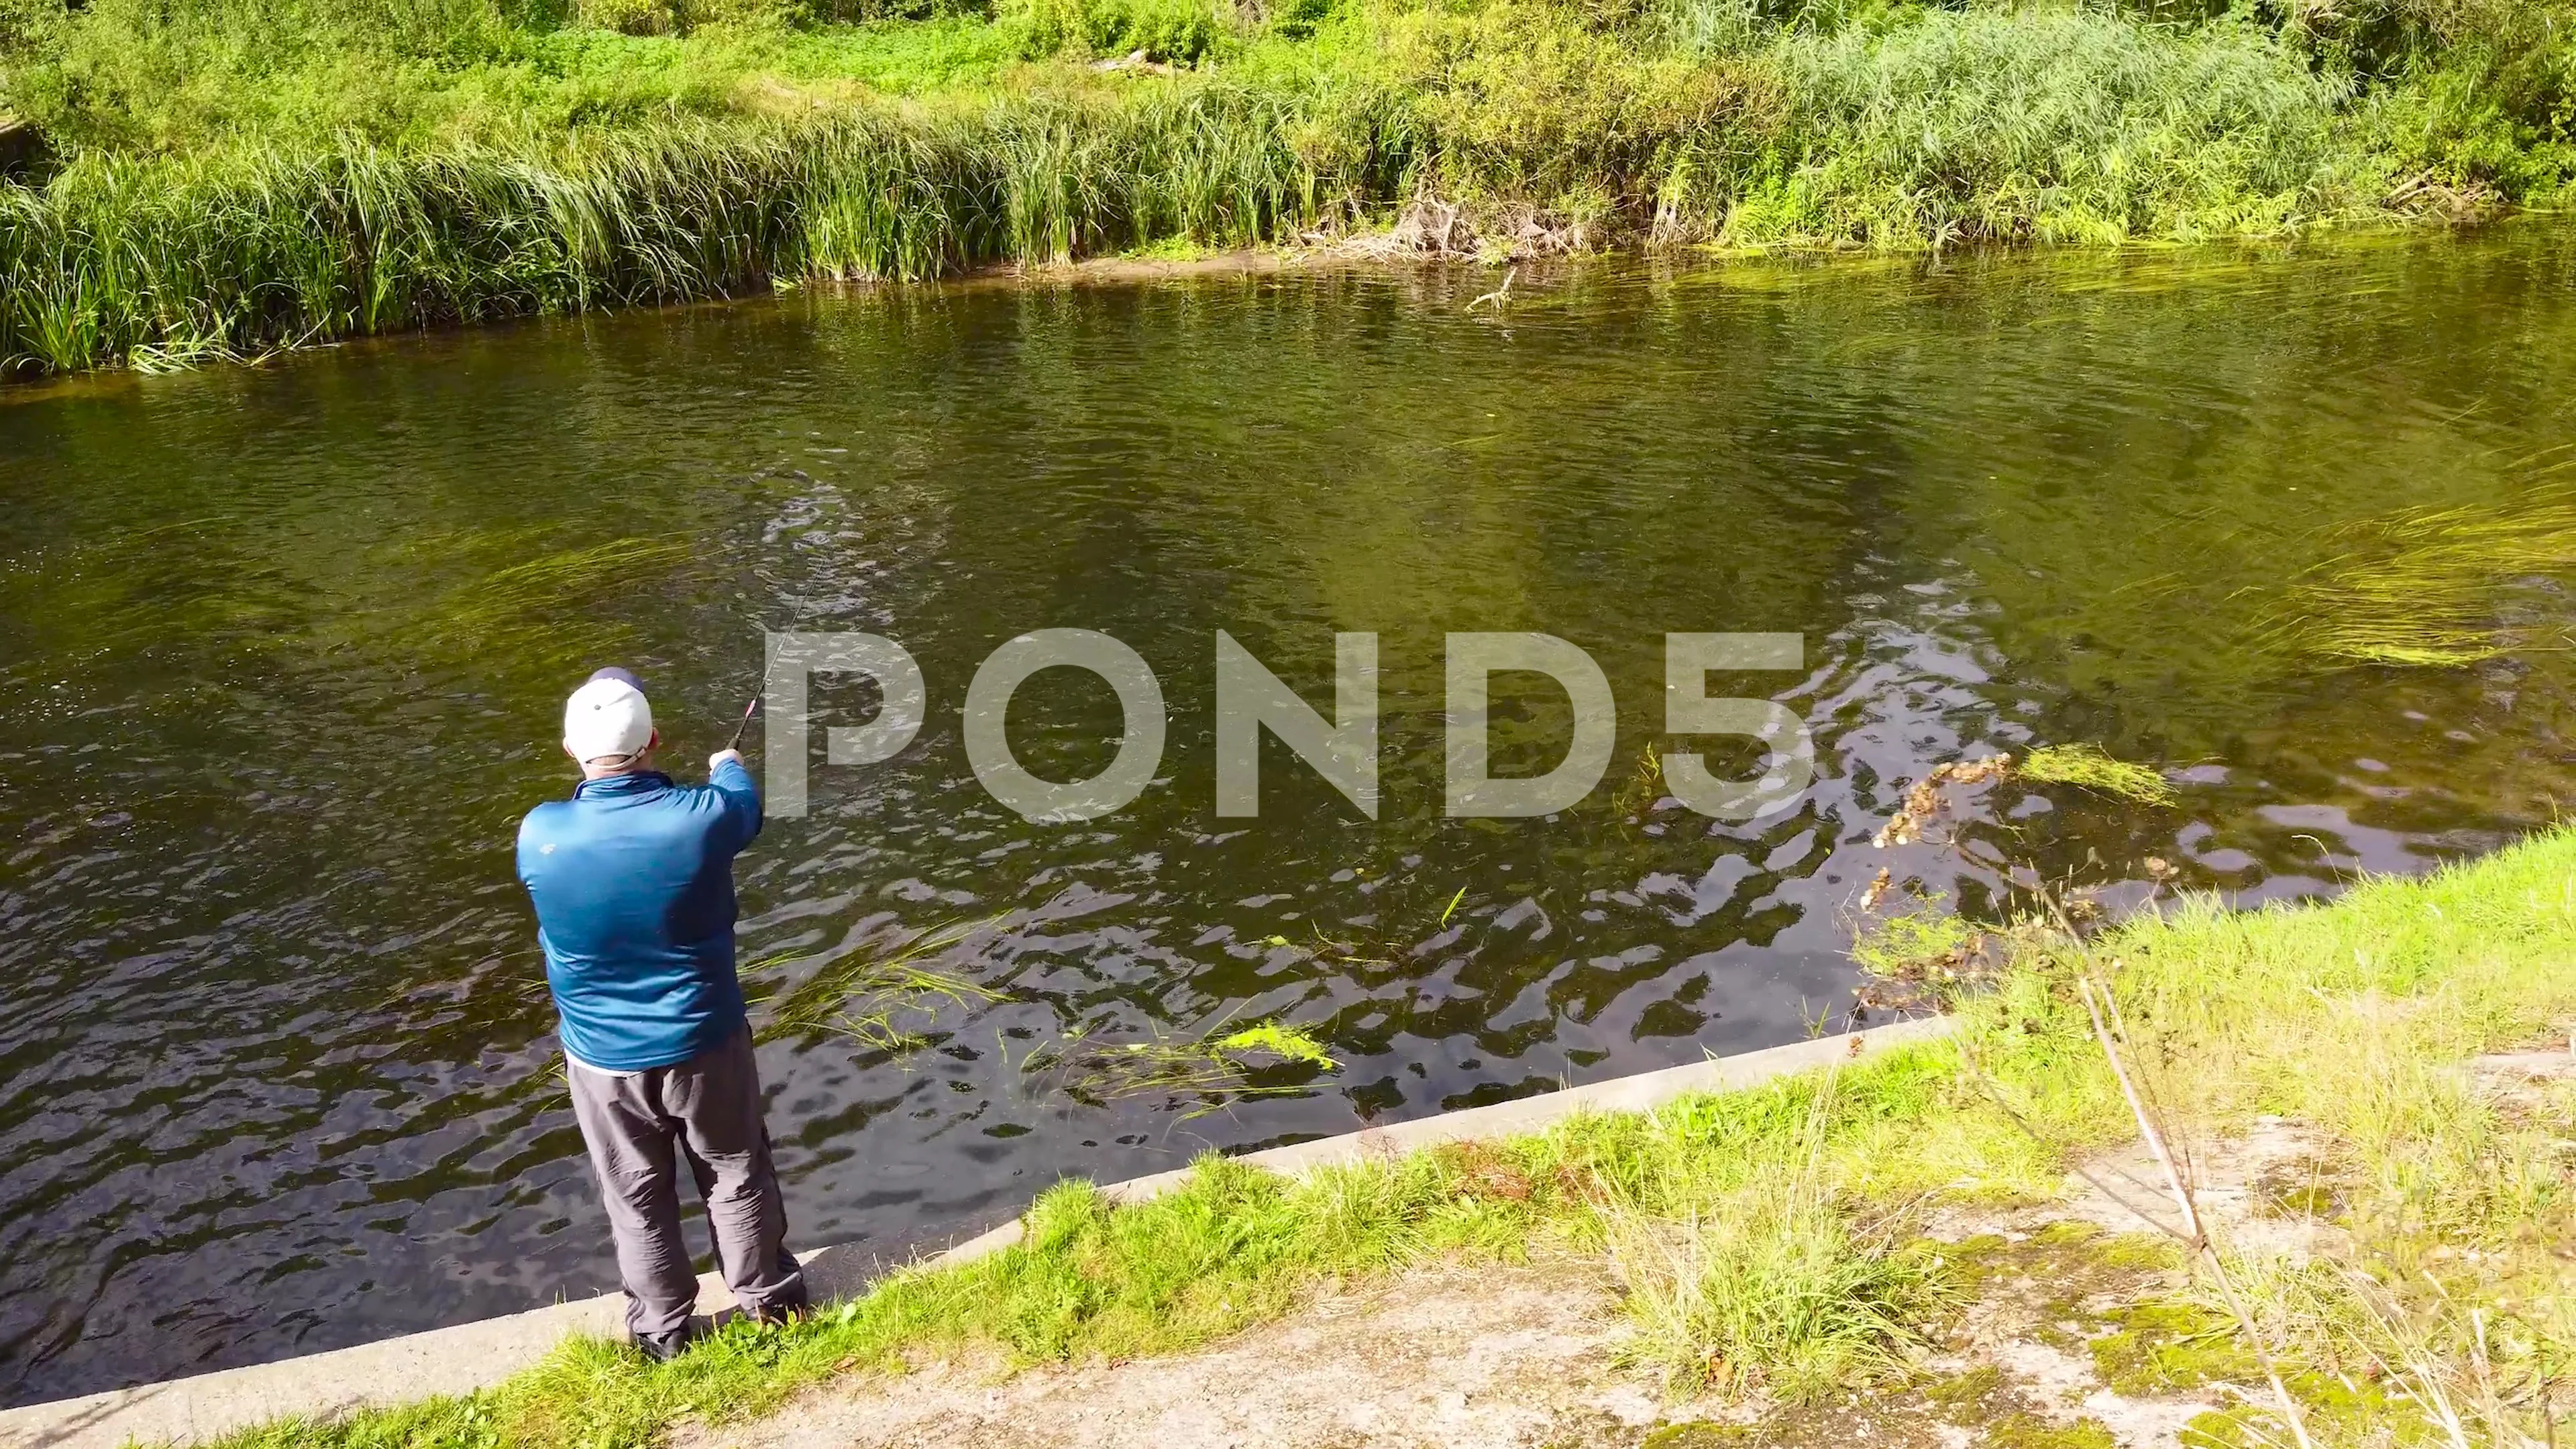 https://images.pond5.com/angler-casting-fishing-line-over-footage-164215786_prevstill.jpeg